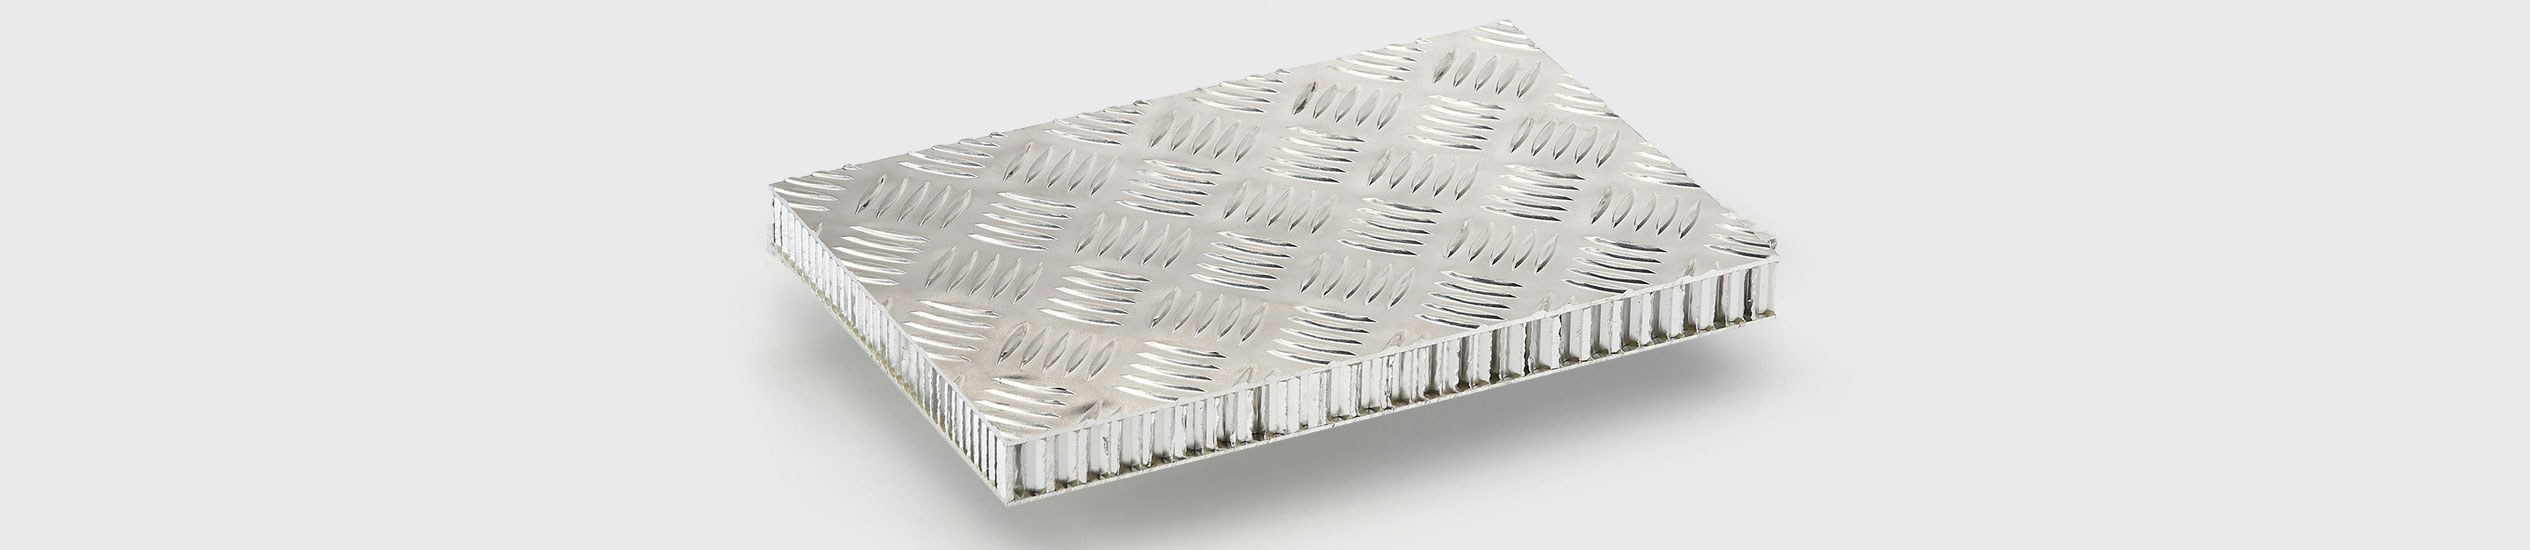 COMPOCEL® FLOOR ALU-RIS, ALU-MAN​ son paneles con una chapa de aluminio tipo damero o arroz de grano (espesor de 2 mm) y una chapa en lámina bruta